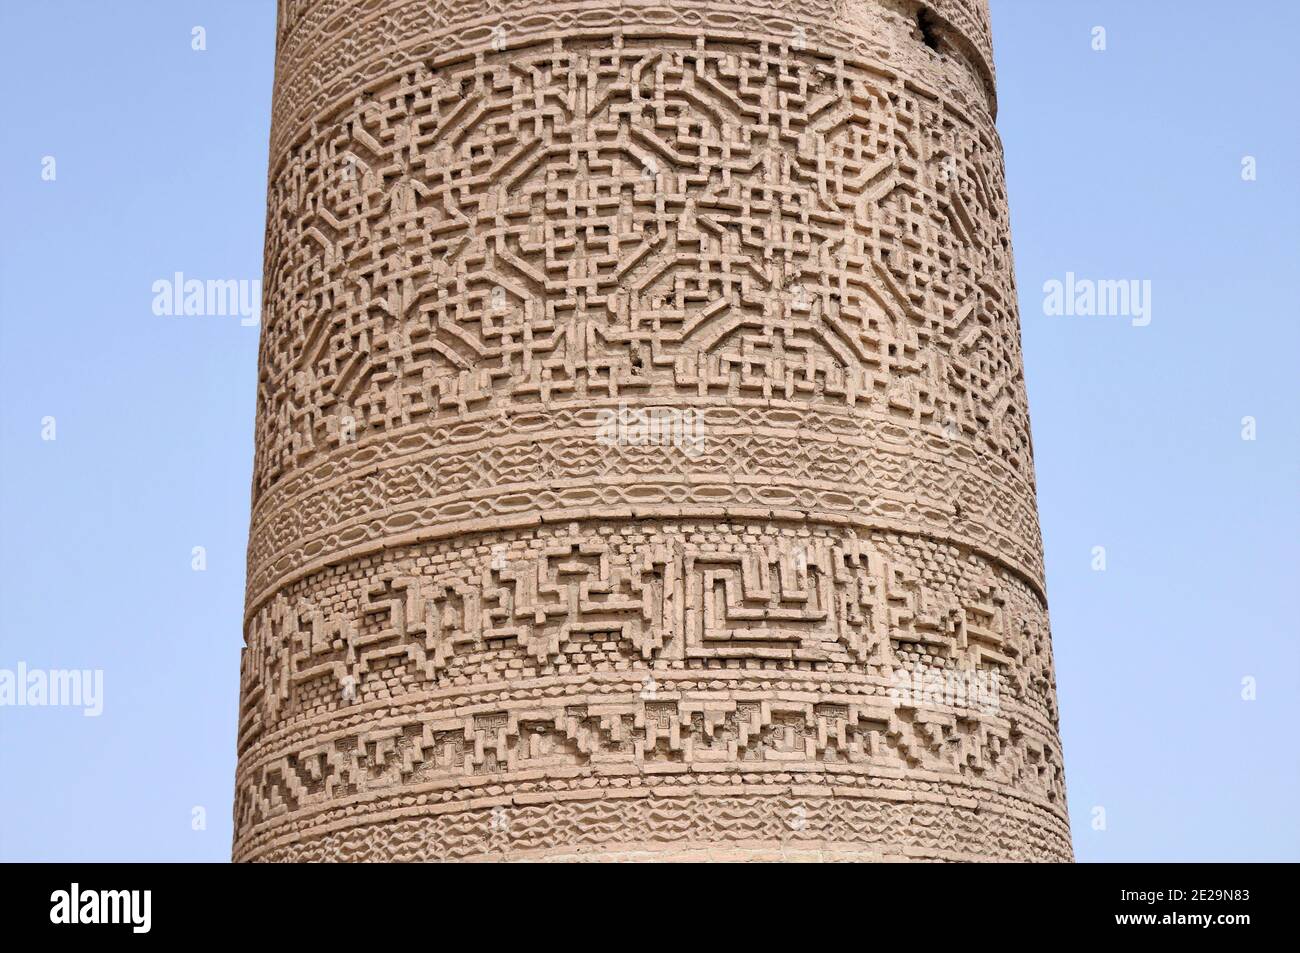 Saveh Friday Moschee wurde im 12. Jahrhundert während der Großen Seldschuken-Periode gebaut. Die Kunst der Seldschuken in der Moschee ist bemerkenswert. Markazi, Iran. Stockfoto